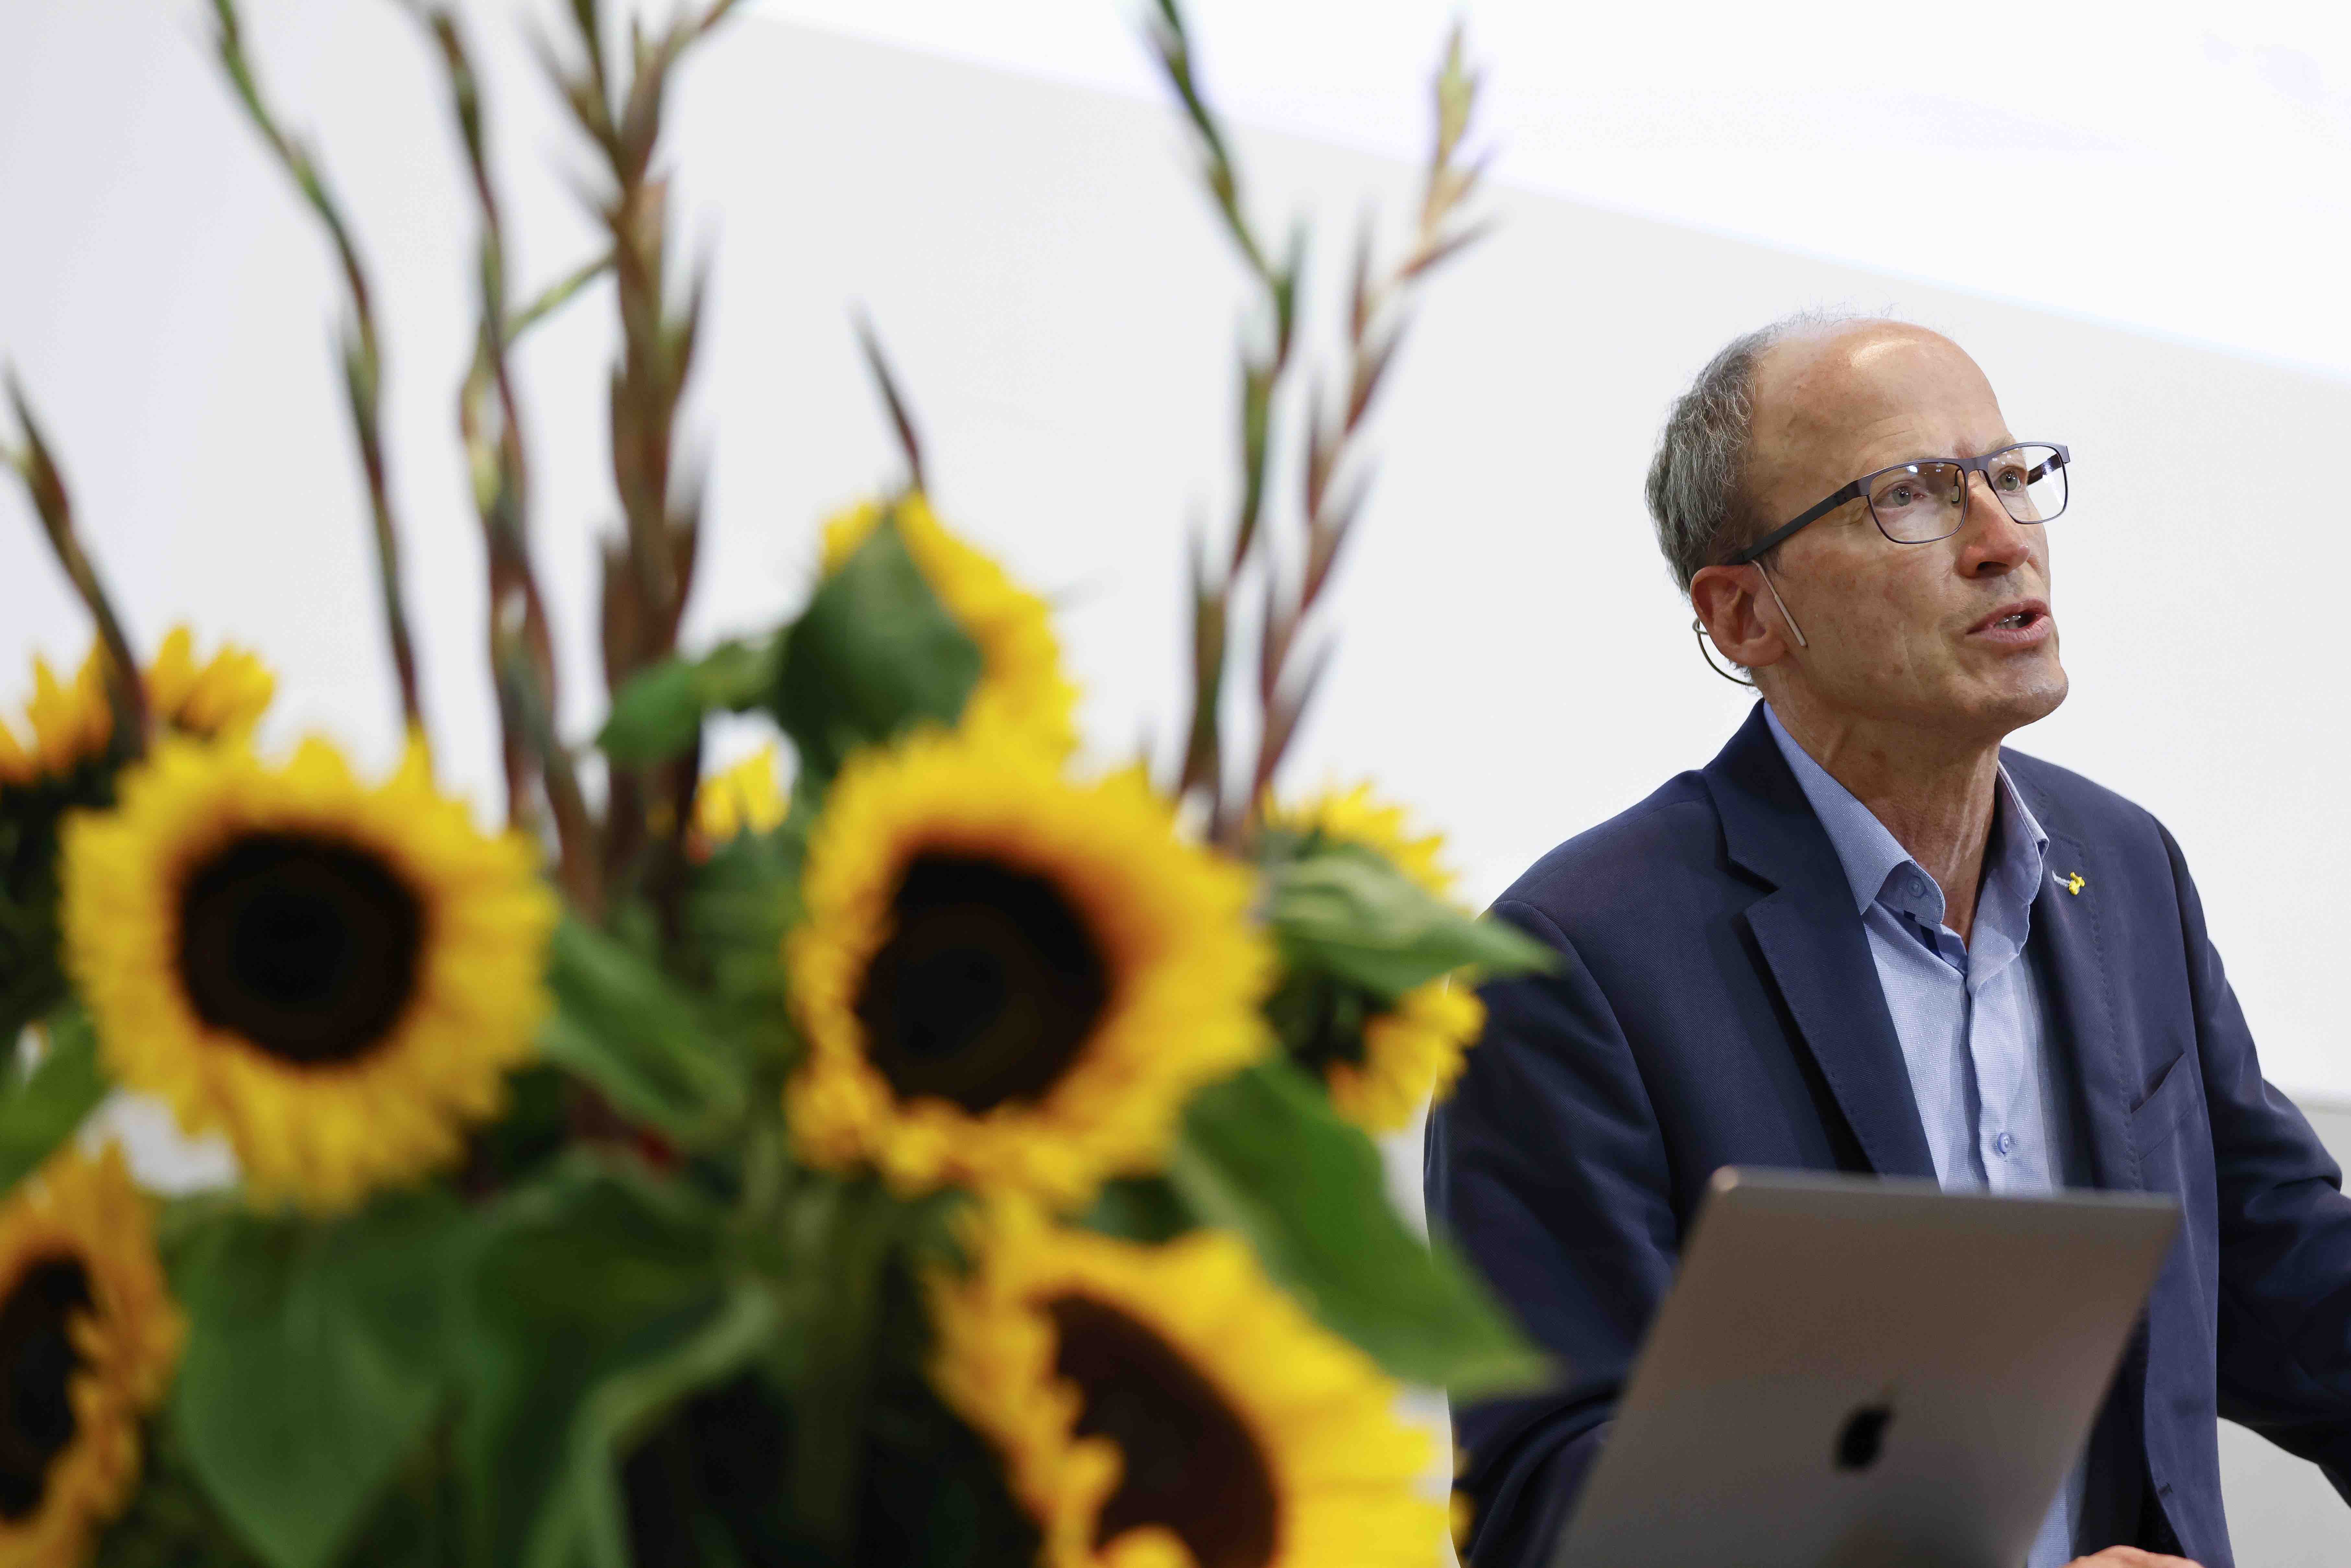 Dr. Matthias Kamber während seinem Referat zum Thema Doping. Im Vordergrund des Bildes steht ein grosser Strauss mit Sonnenblumen.